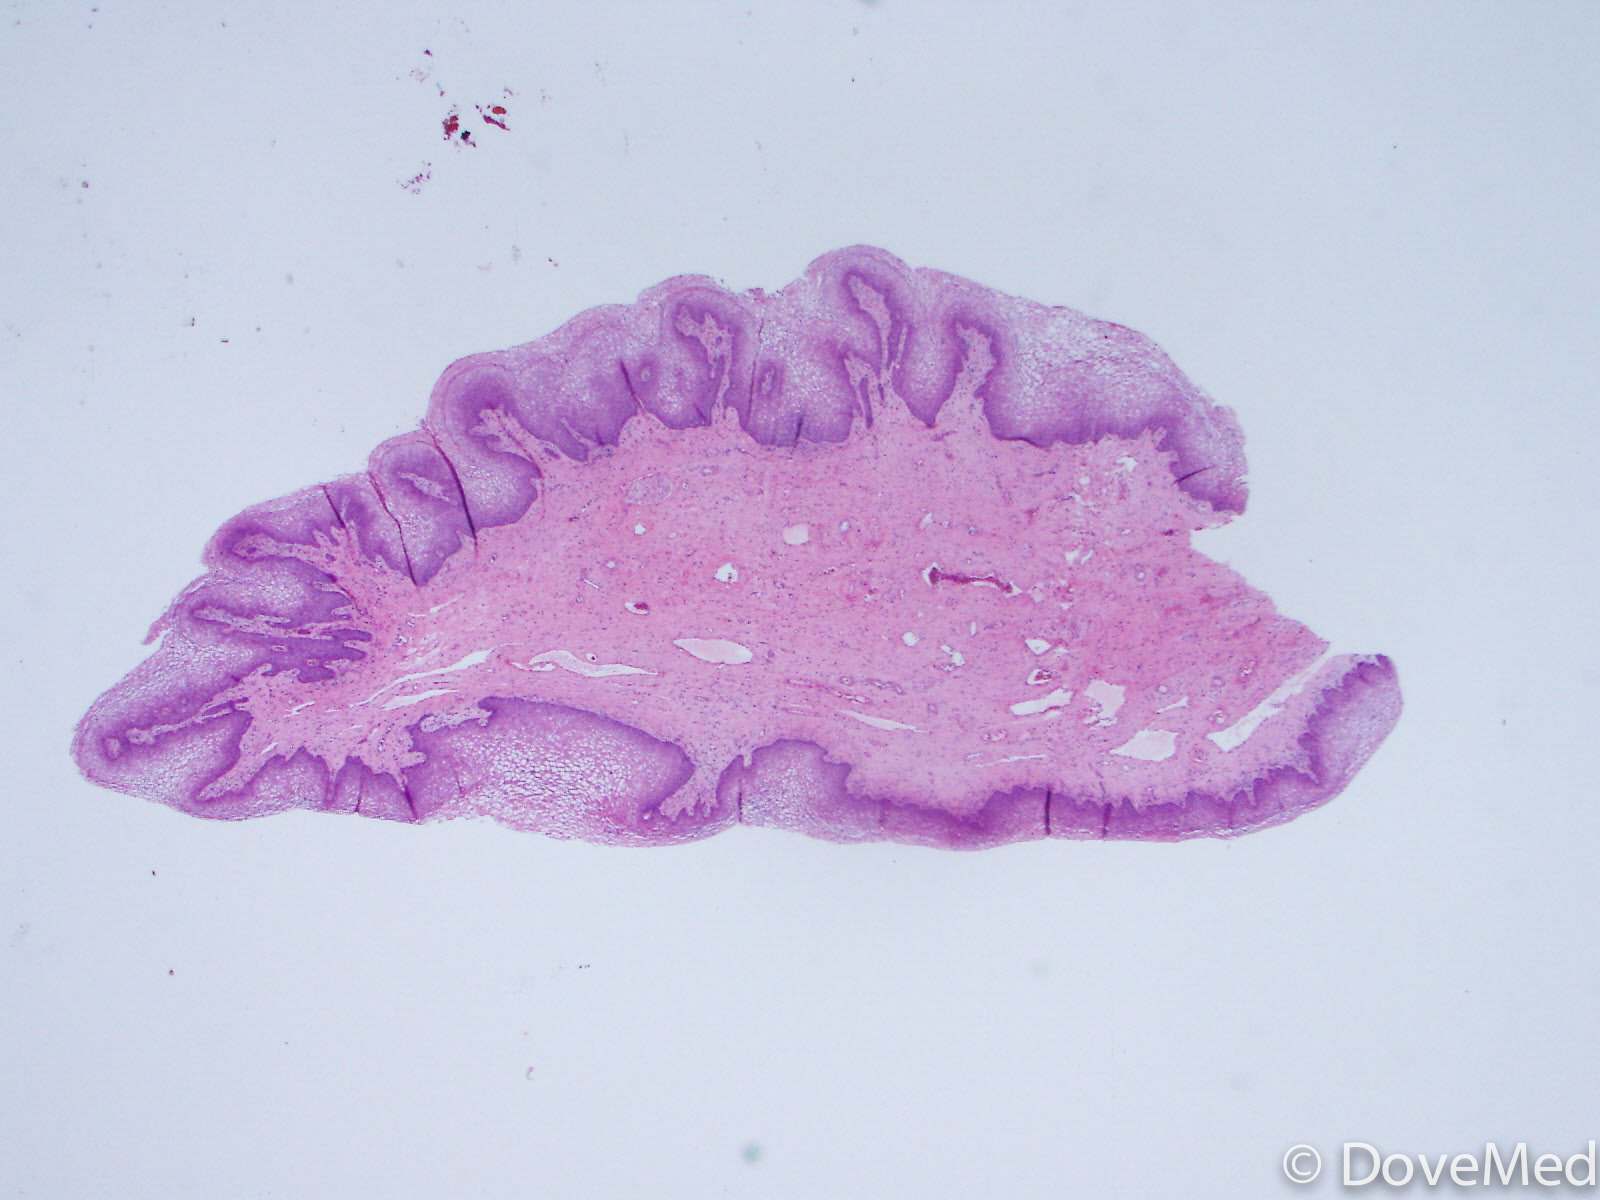 fibroepithelial polyp histology